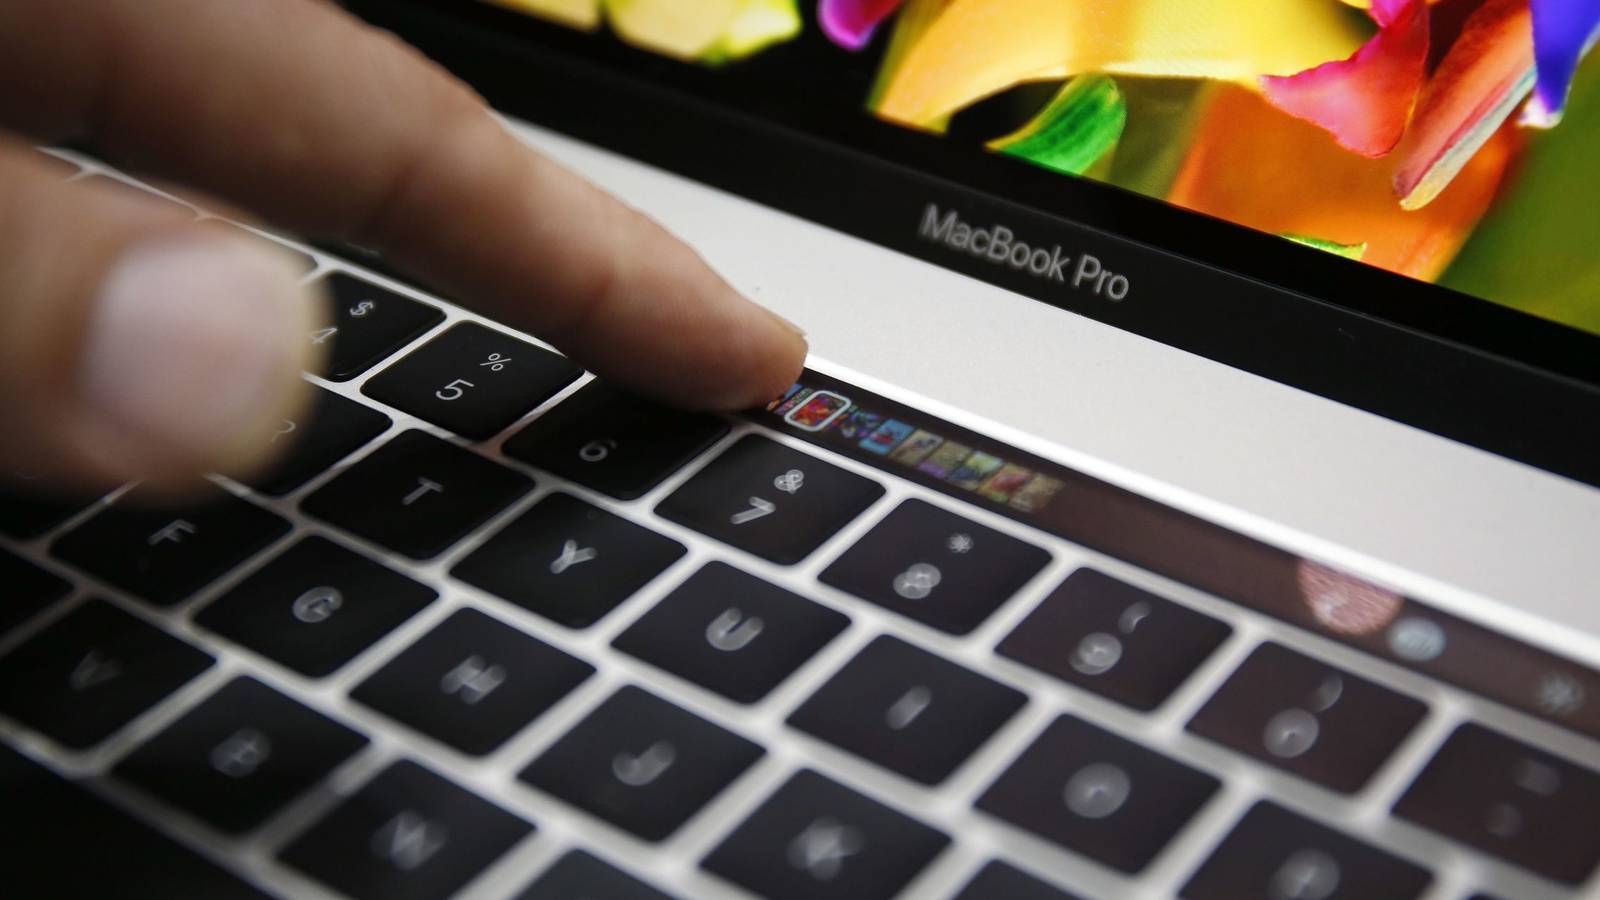 ¿El teclado de tu MacBook está fallando? Apple reconoce fallas y ofrece arreglarlos gratis | El Imparcial de Oaxaca